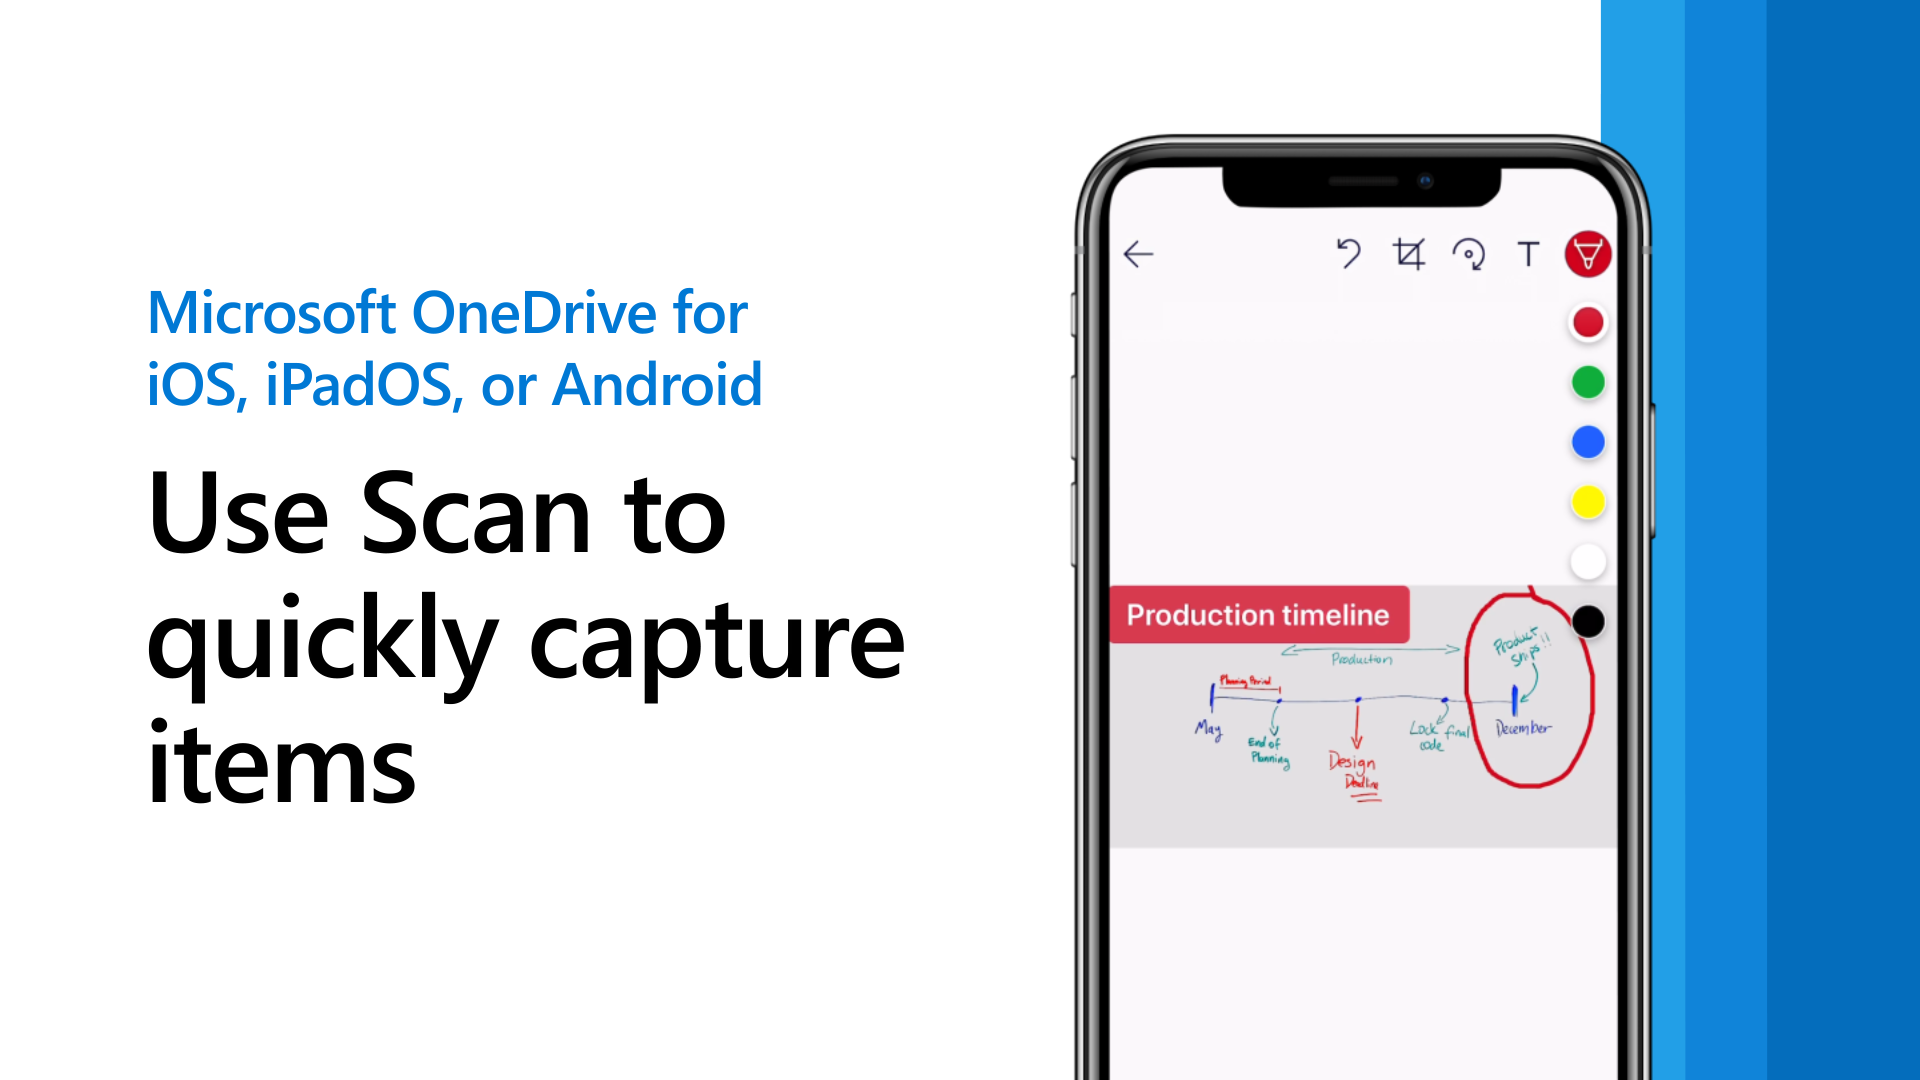 Jak ukládat fotky na OneDrive?